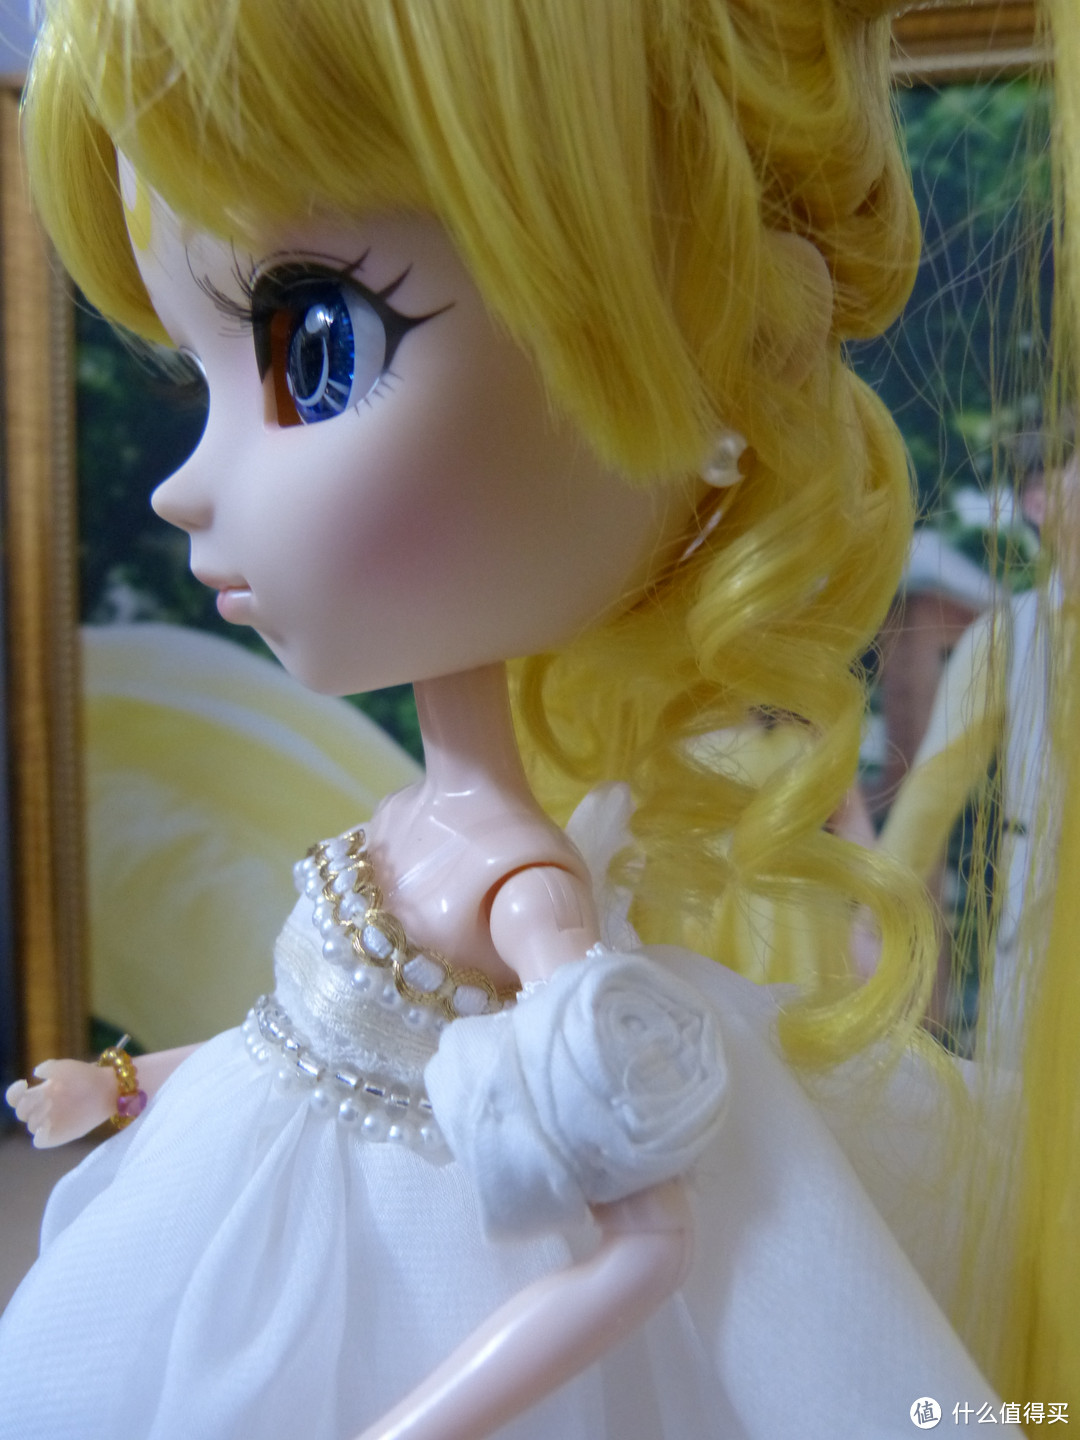 一次不太愉快的日亚购物经历：Pullip 美少女娃娃